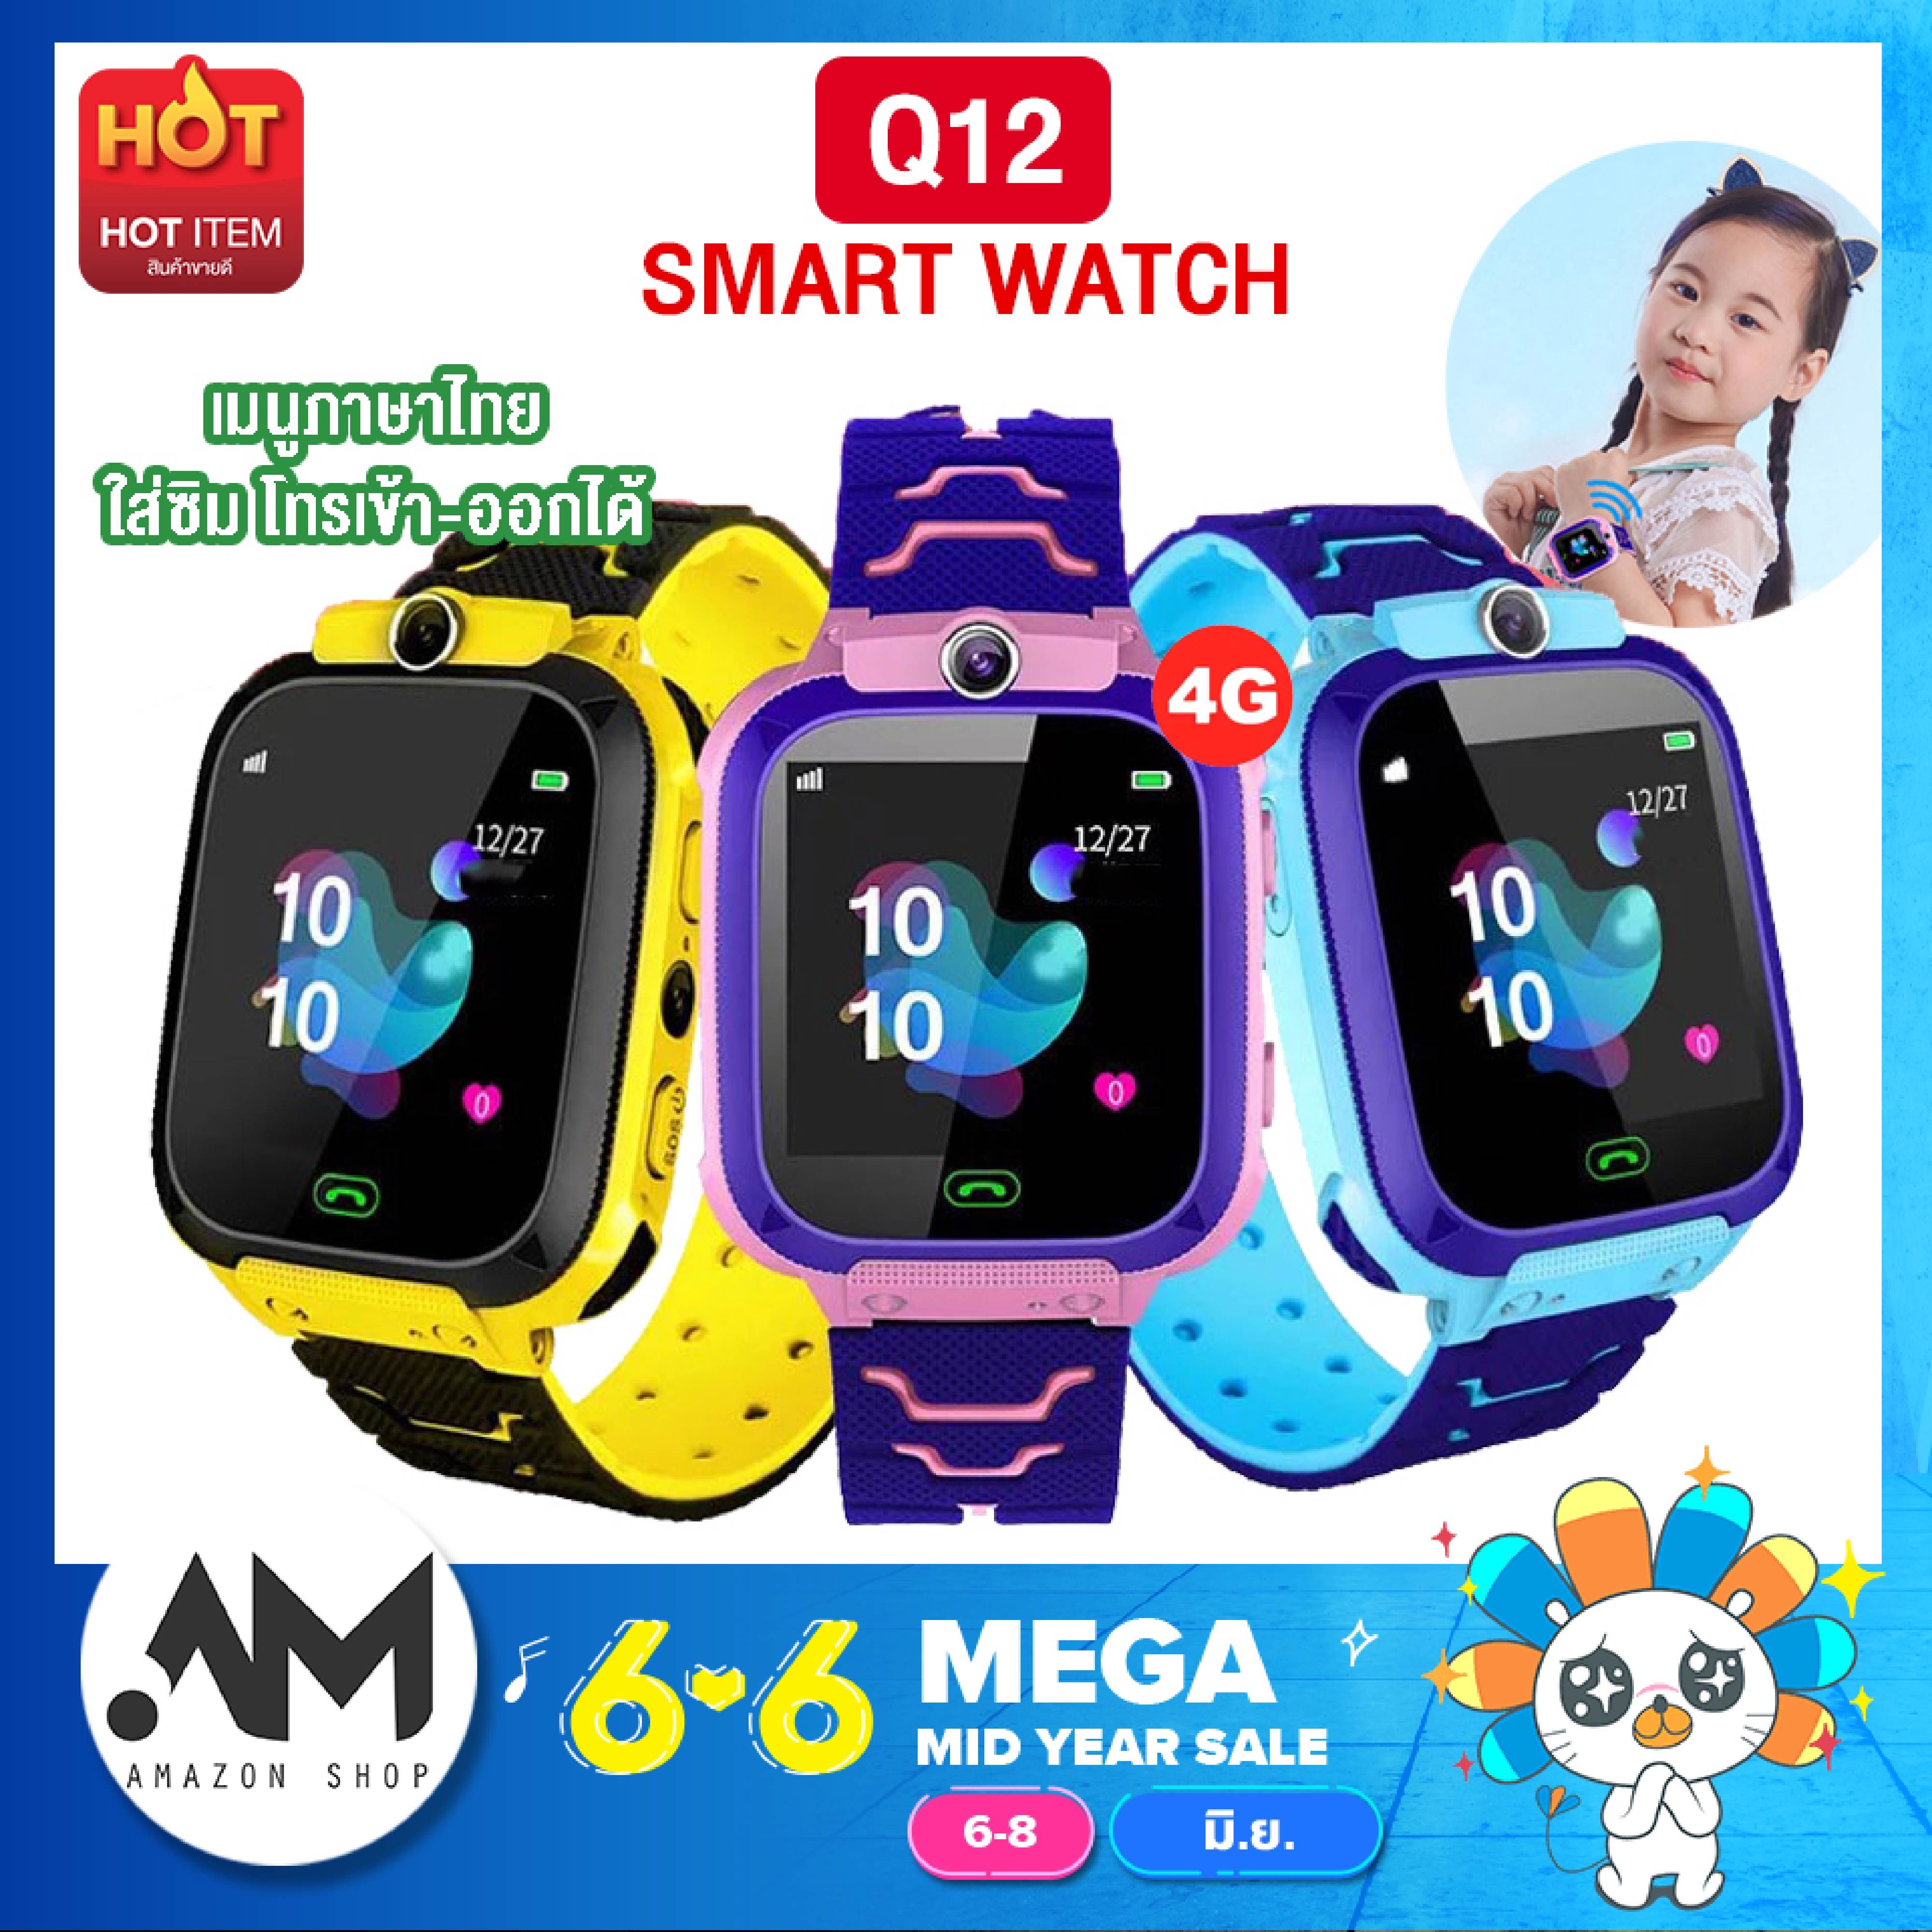 【ส่งจากประเทศไทย】Smart Watch Q12 ใหม่! อัพเกรด เมนูภาษาไทย โทรเข้า-โทรออก มีกล้องถ่ายรูป ติดตามตำแหน่ง LBS Q12 นาฬิกา นาฬิกาข้อมือเด็ก โทรออกได้ โทรเข้า มีกล้อง เมนูภาษาไทย ของแท้ SmartWatch สมารทวอทชเด็ก ข้อมือเด็กผู้หญิง เด็กผู้ชาย ไอโม่